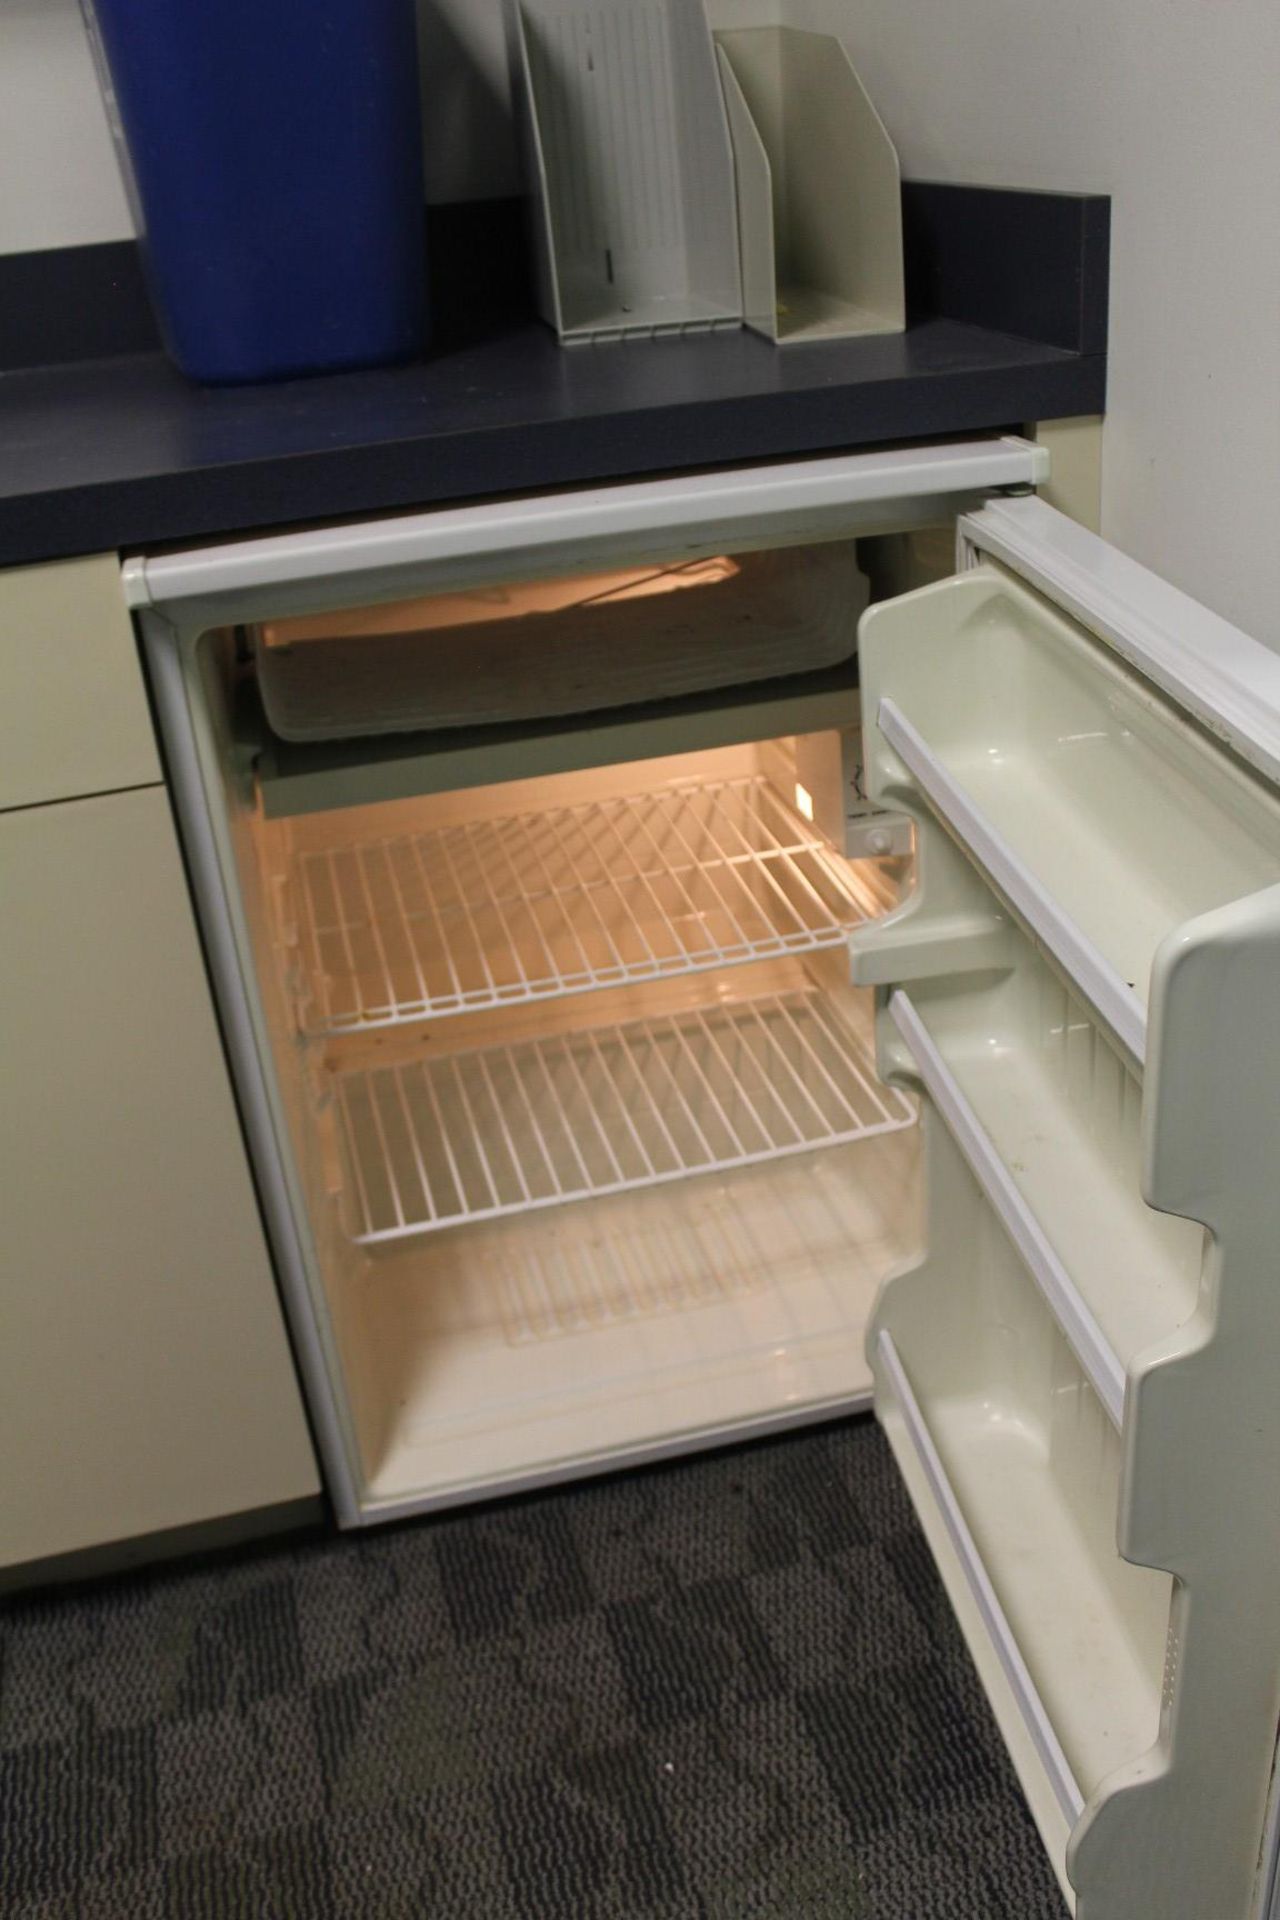 GE Office Refrigerator - Bild 2 aus 2